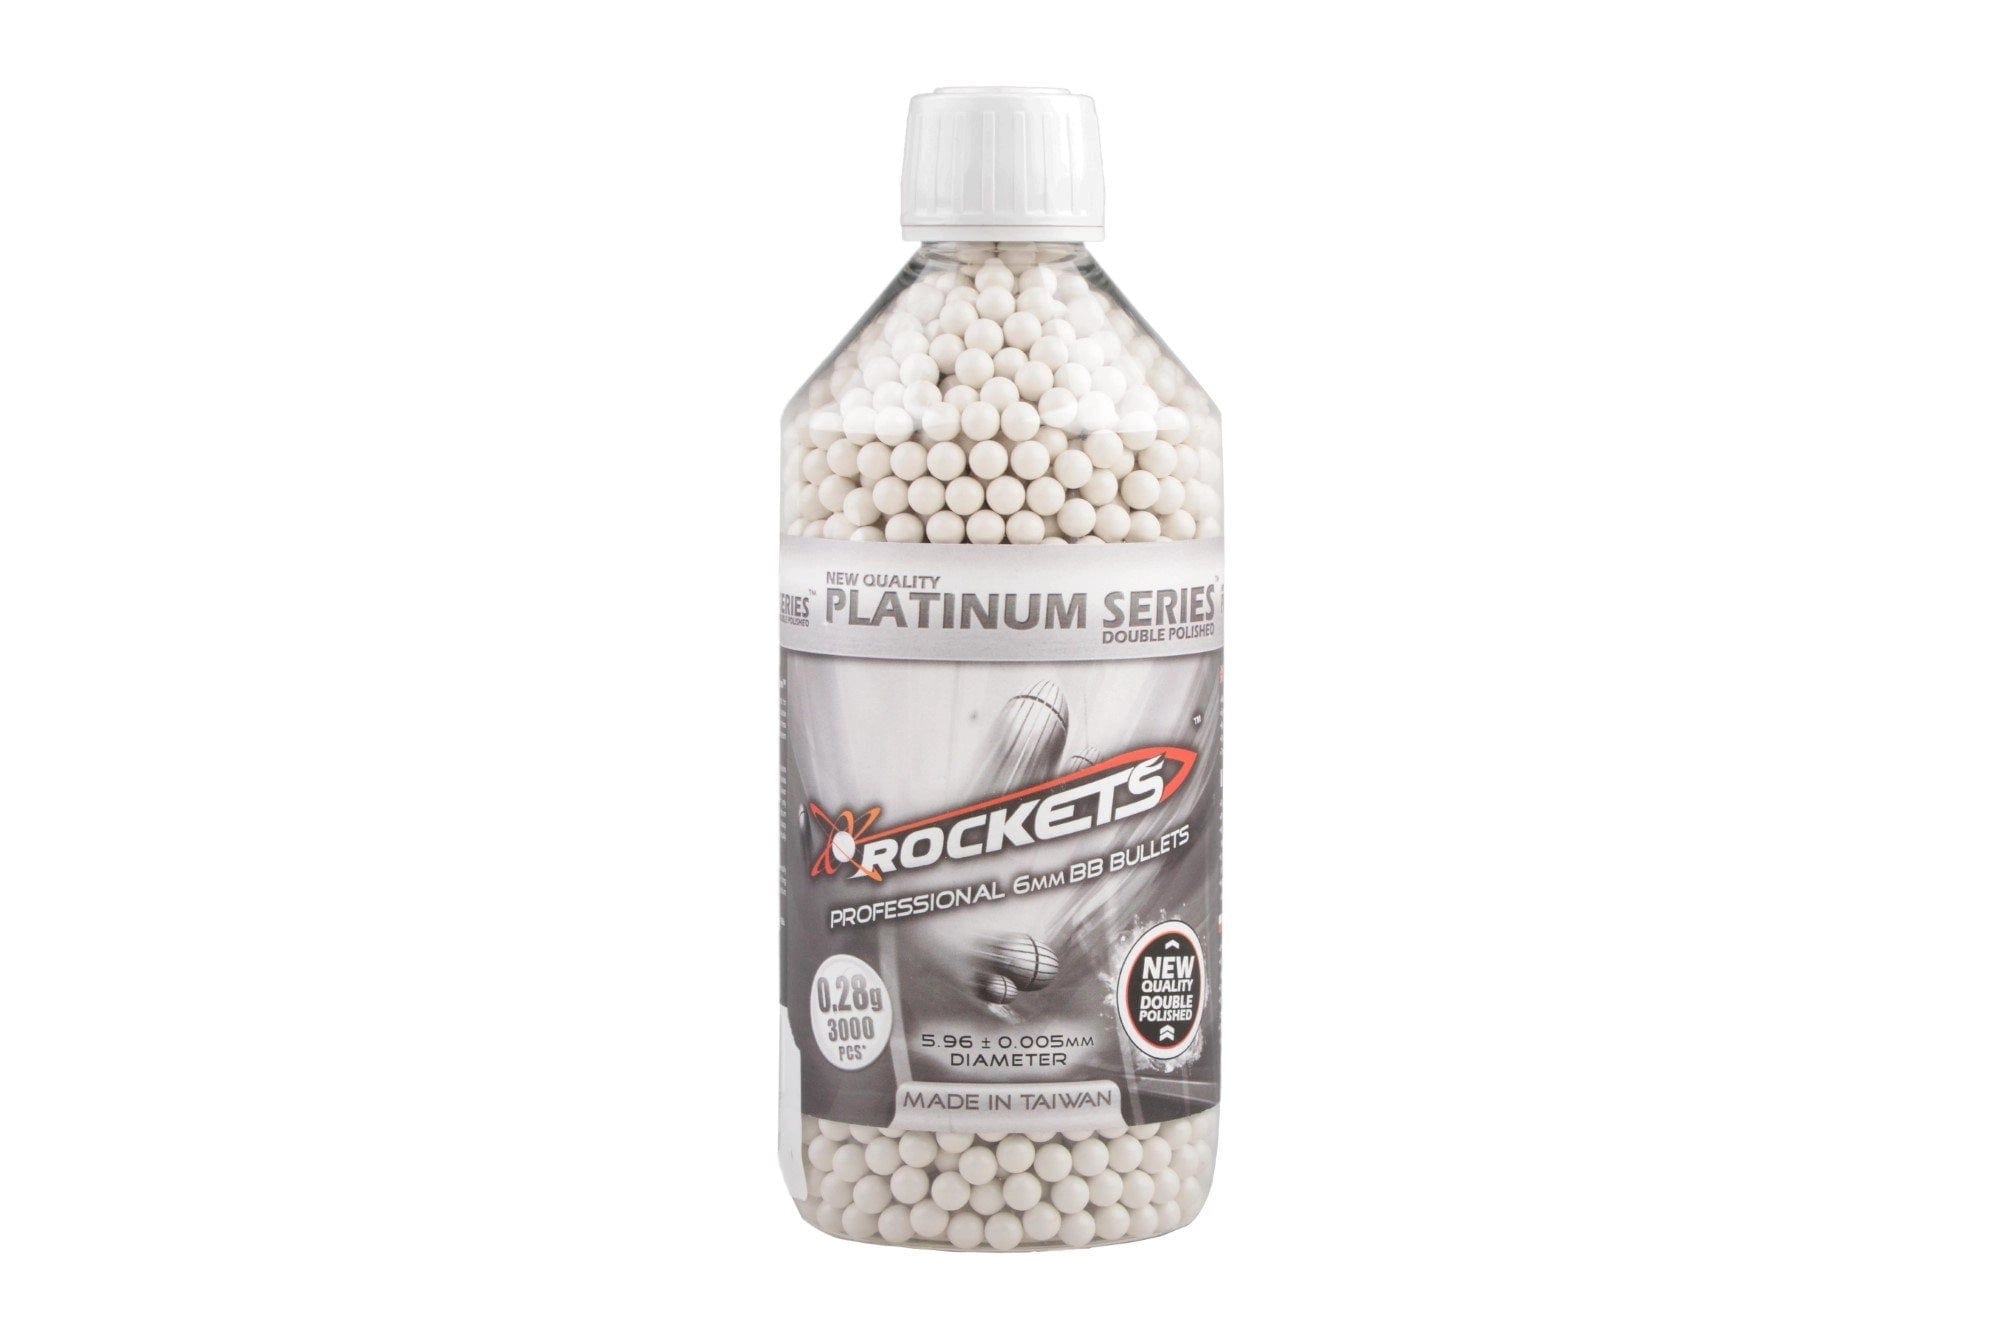 Rockets Platinum Series 0,28g BB pellets 3000 pieces - bottle